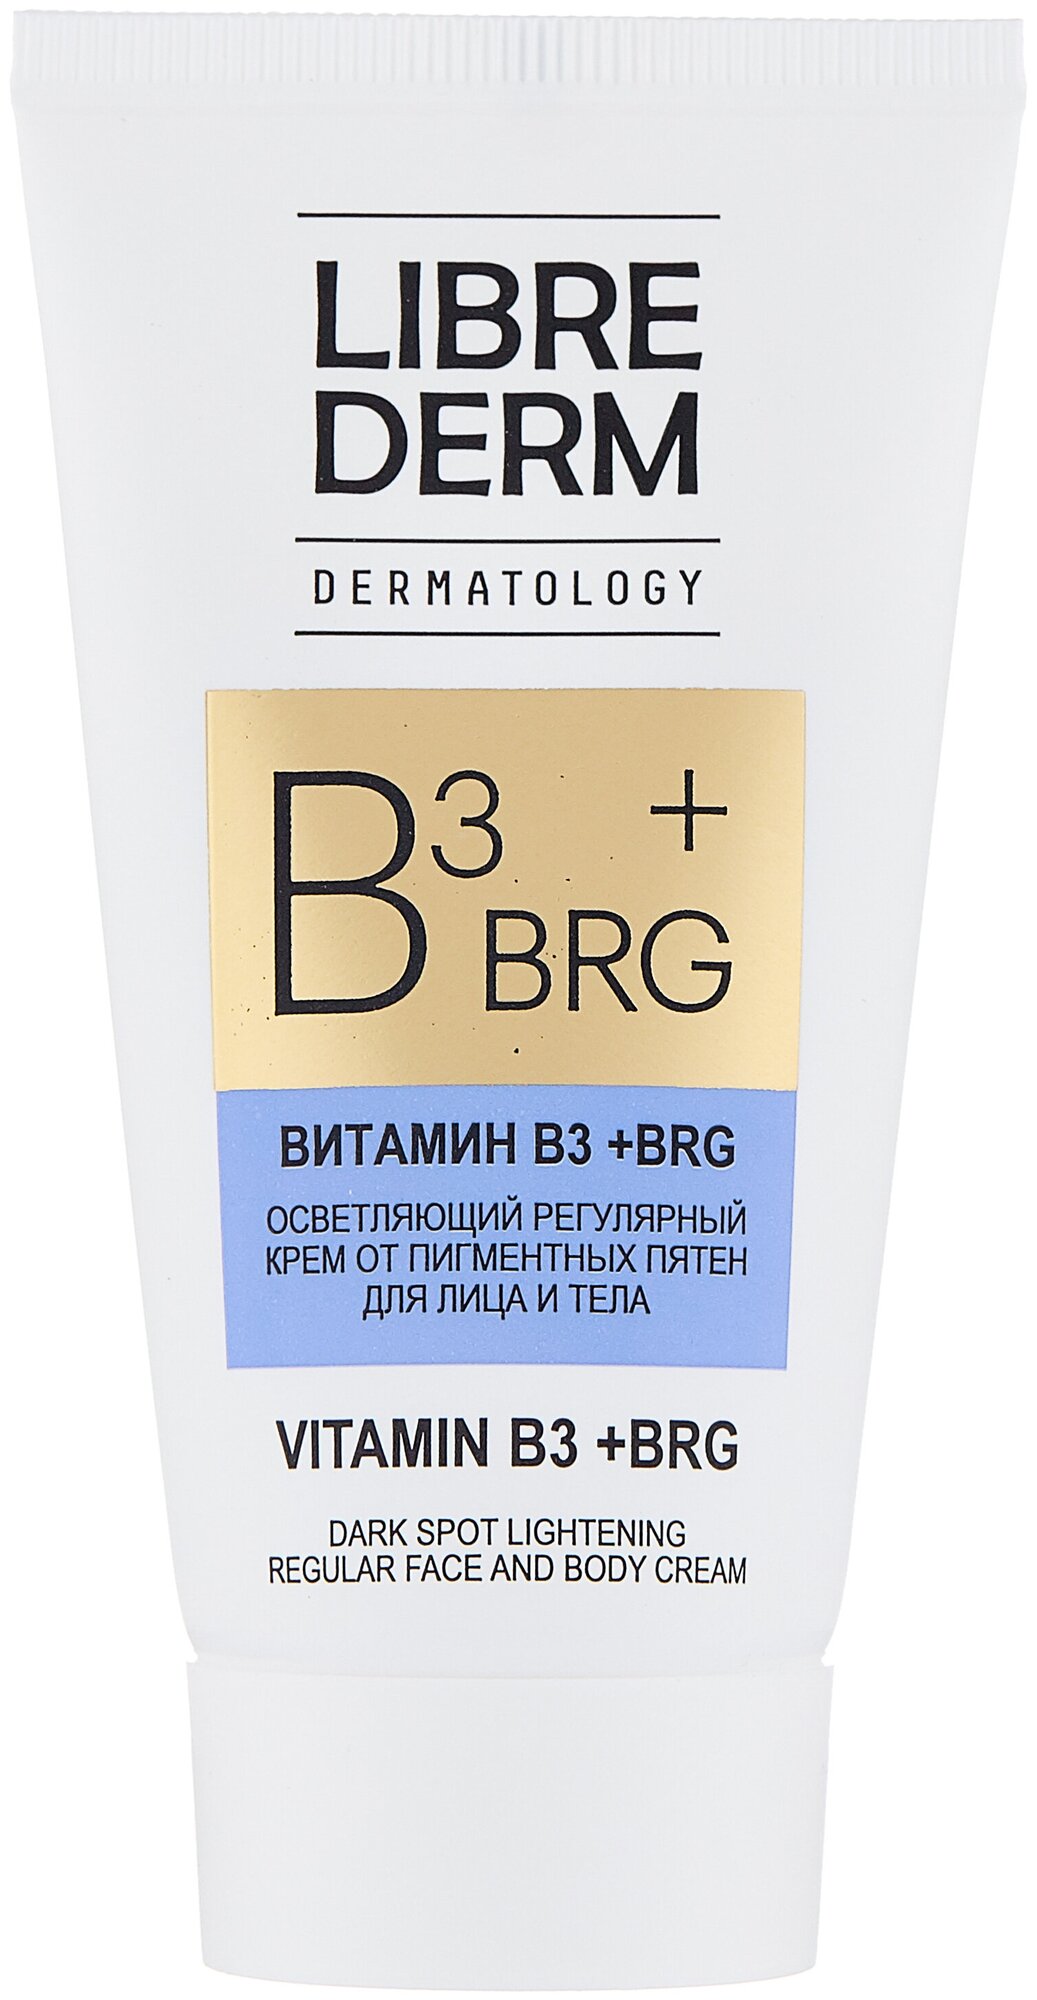 Librederm BRG + витамин В3 Осветляющий регулярный крем от пигментных пятен для лица и тела